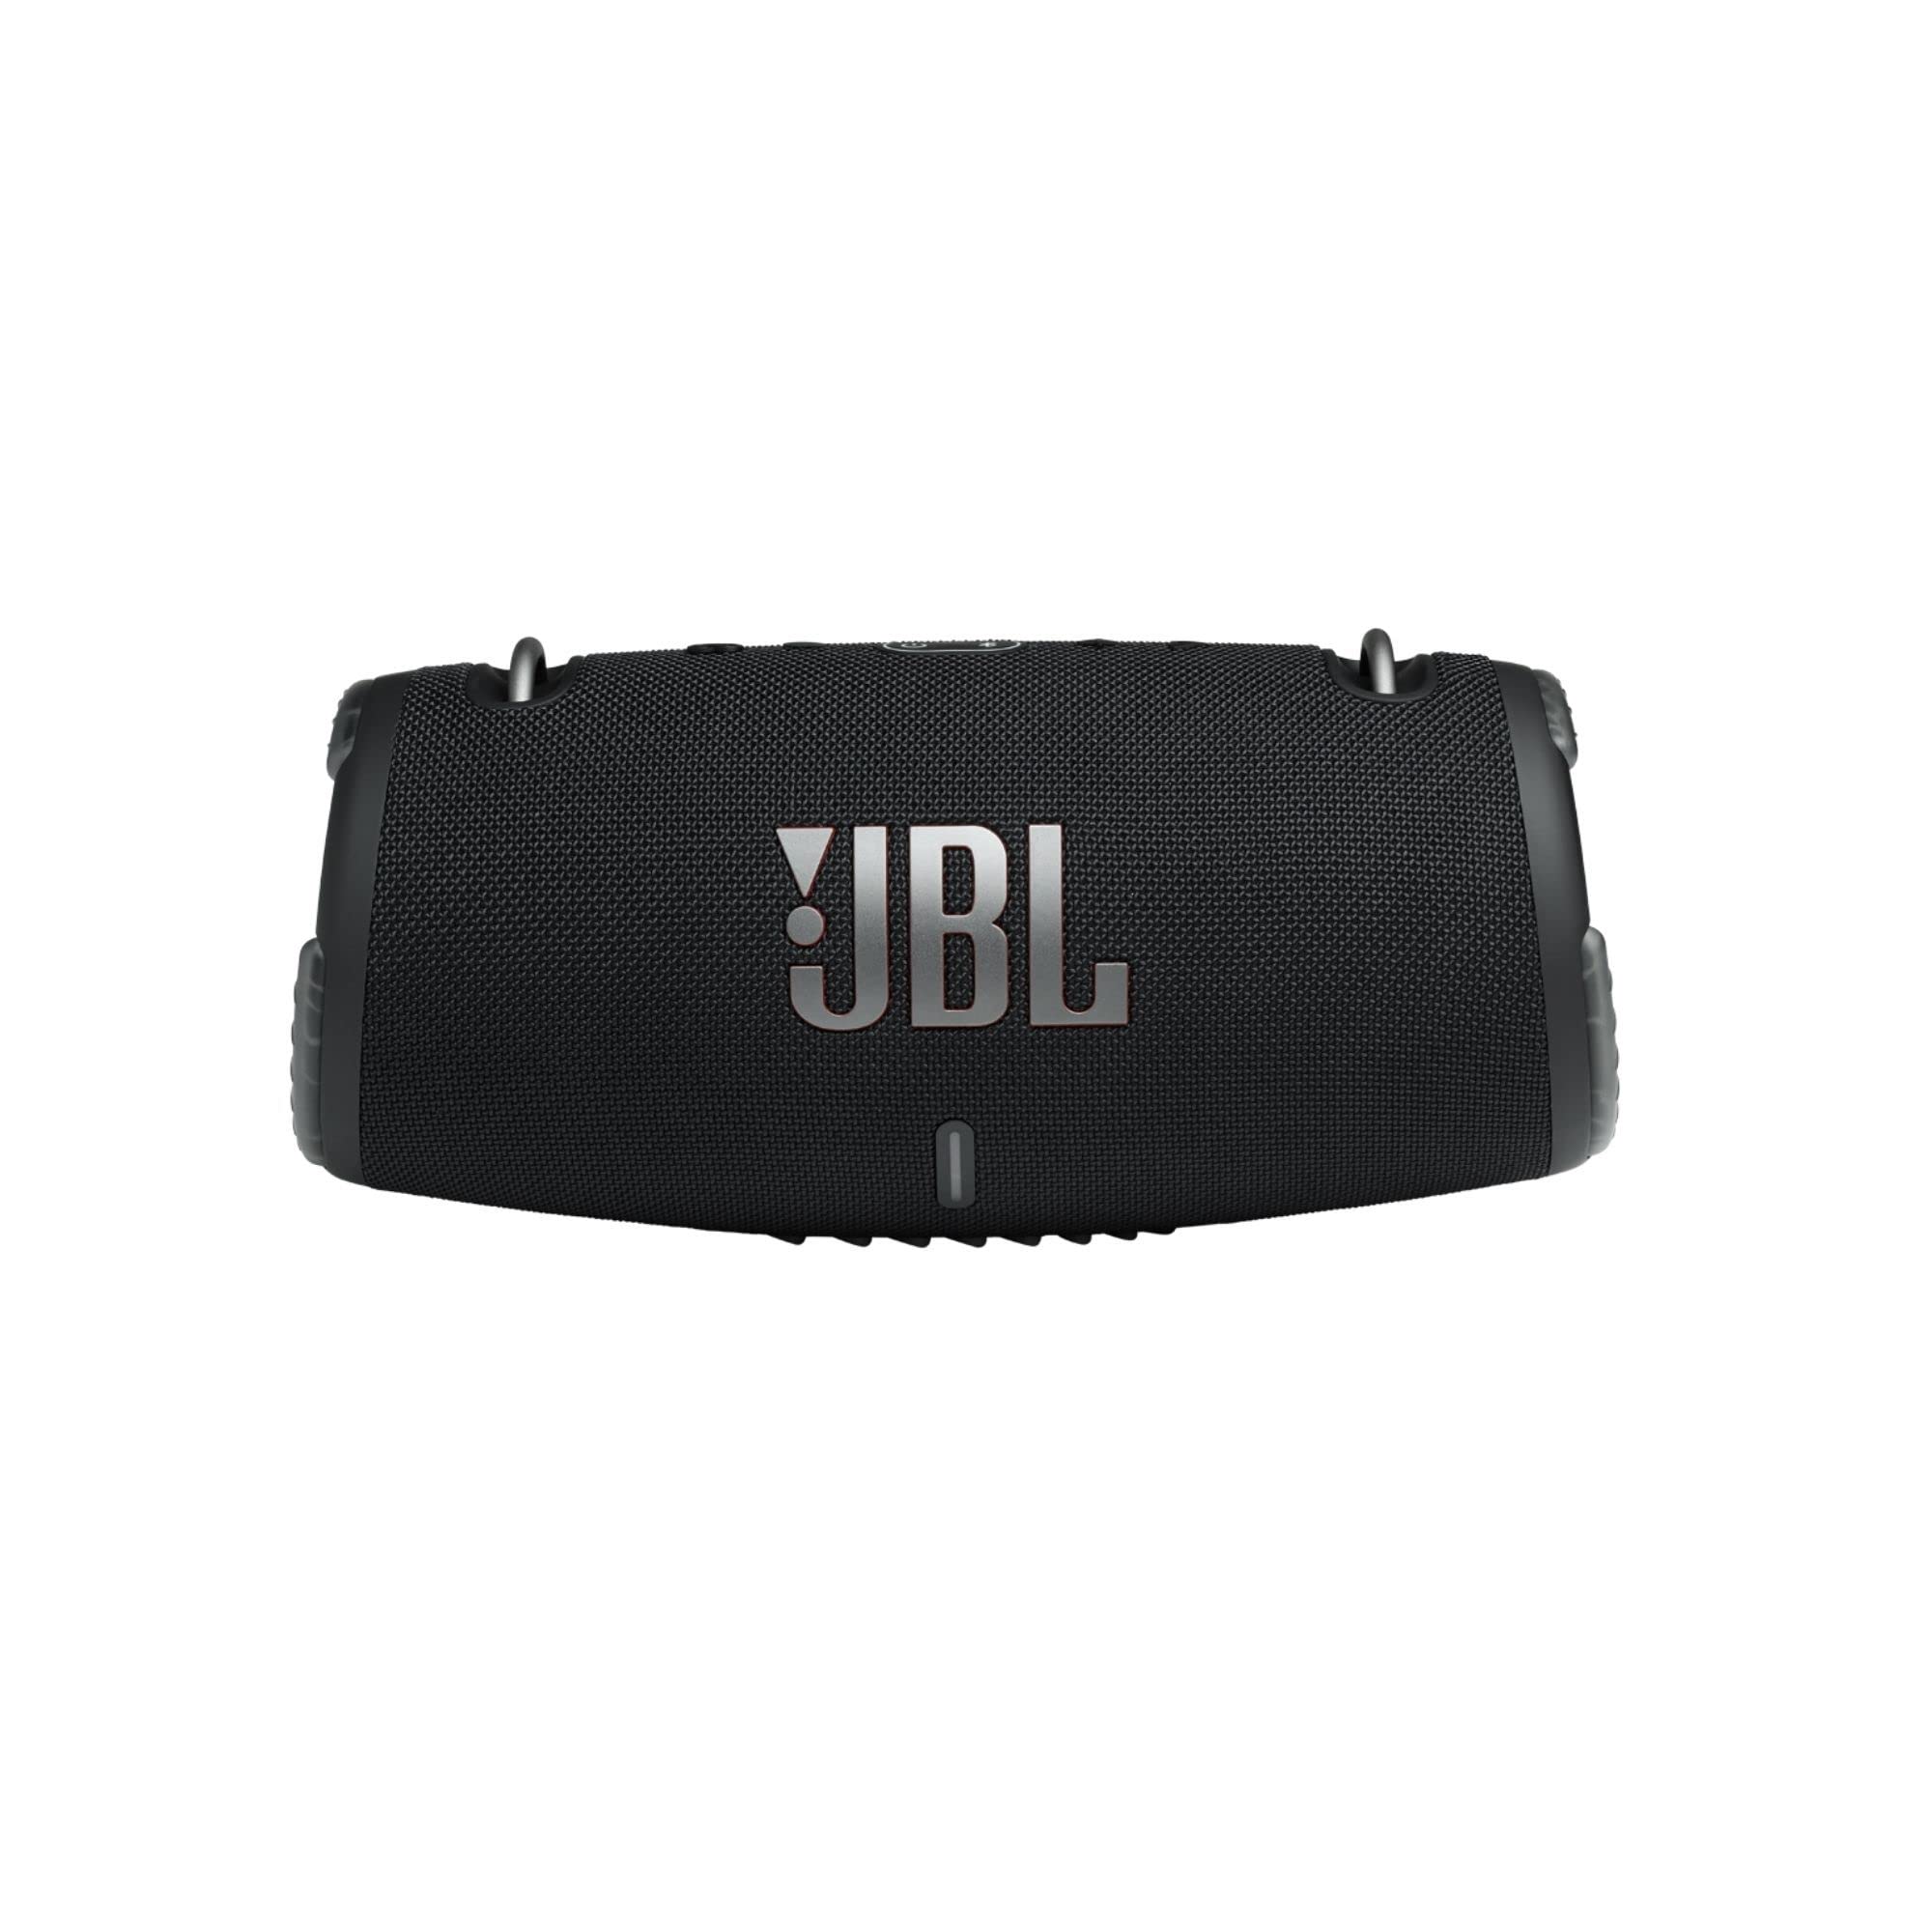 JBL Xtreme 3 — przenośny głośnik Bluetooth z wodoodporn...